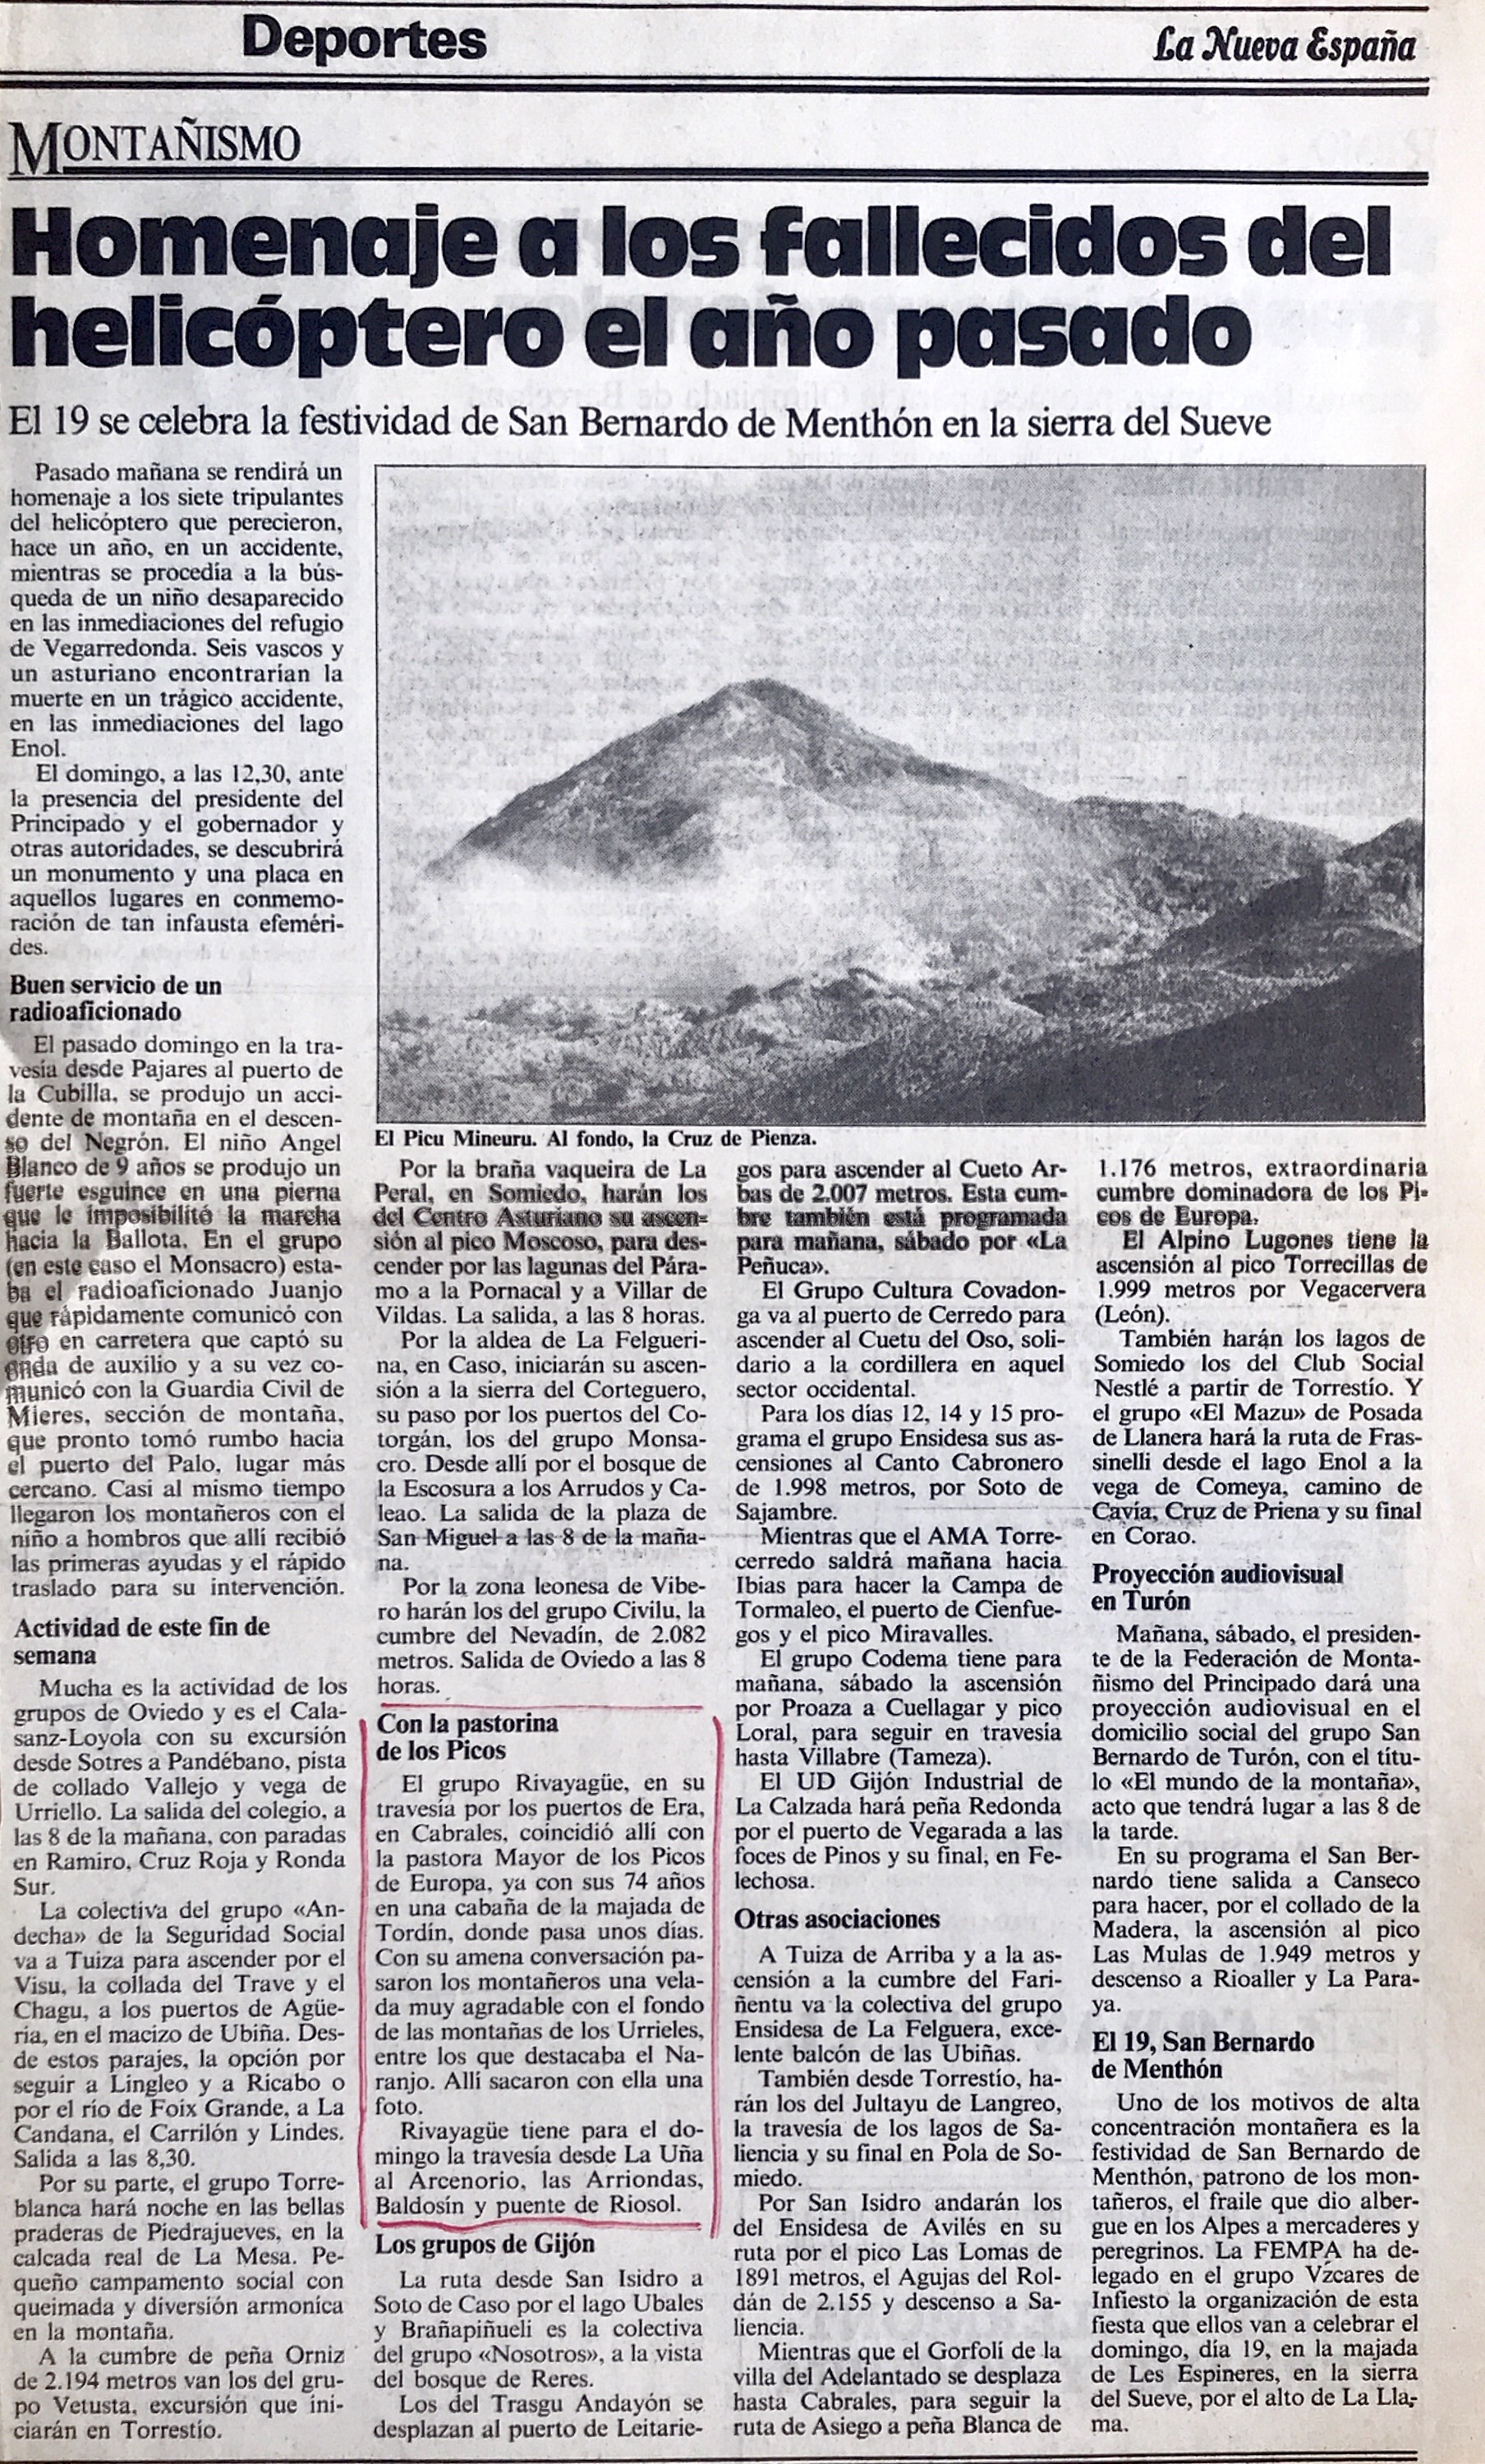 12 junio, 1988: Puerto del Arcenorio